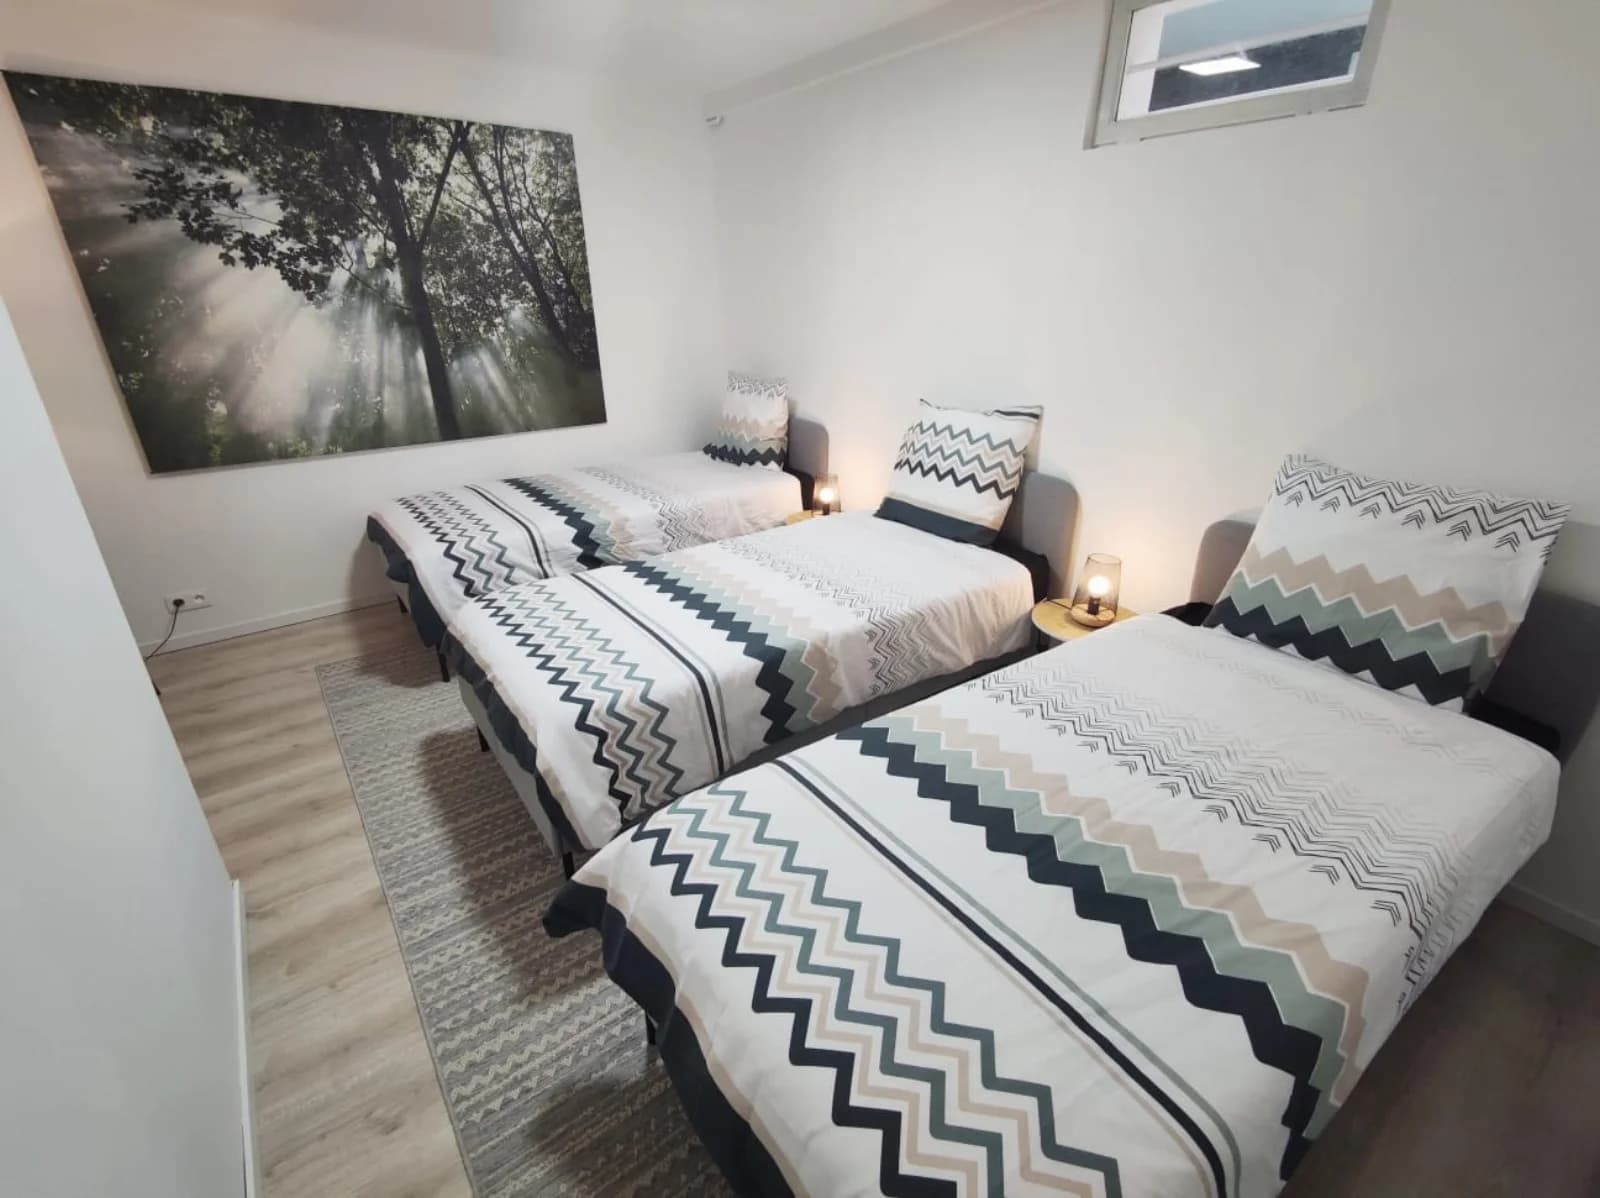 Bedroom in House Piscine intérieure luxe near Paris - 1